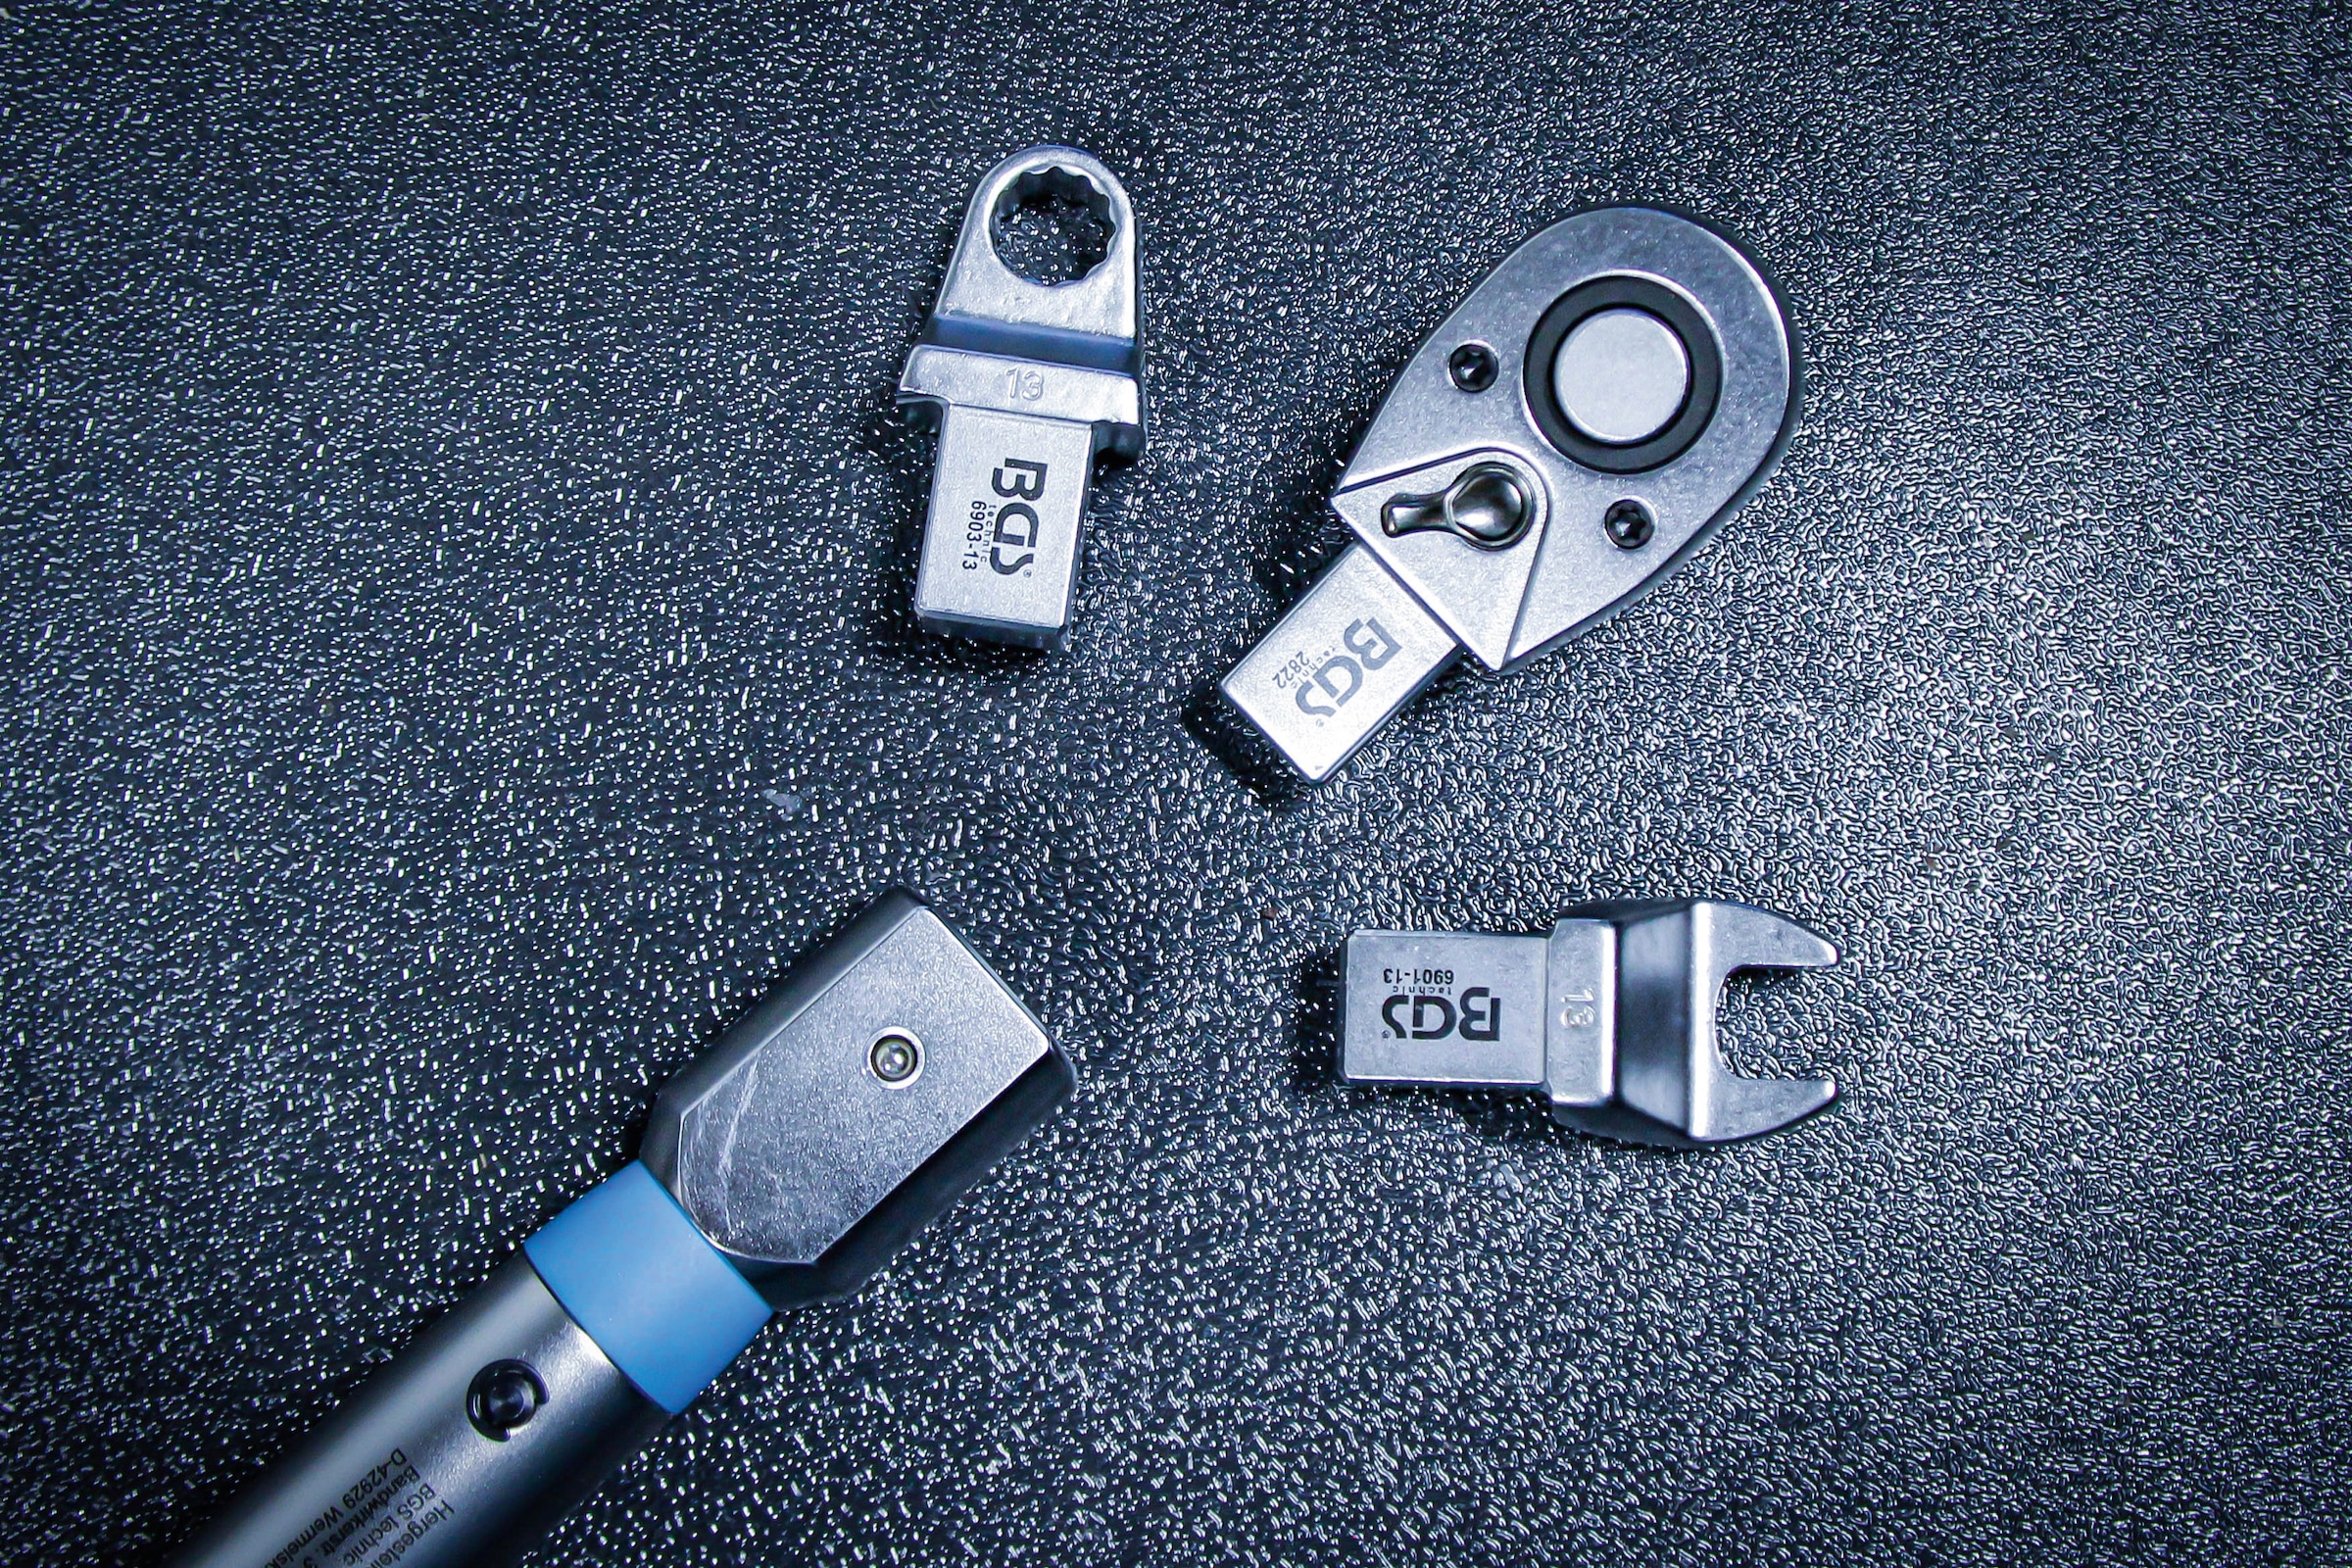 BGS Drehmomentschlüssel »Drehmomentschlüssel«, 10 - 50 Nm, für 9 x 12 mm Einsteckwerkzeuge